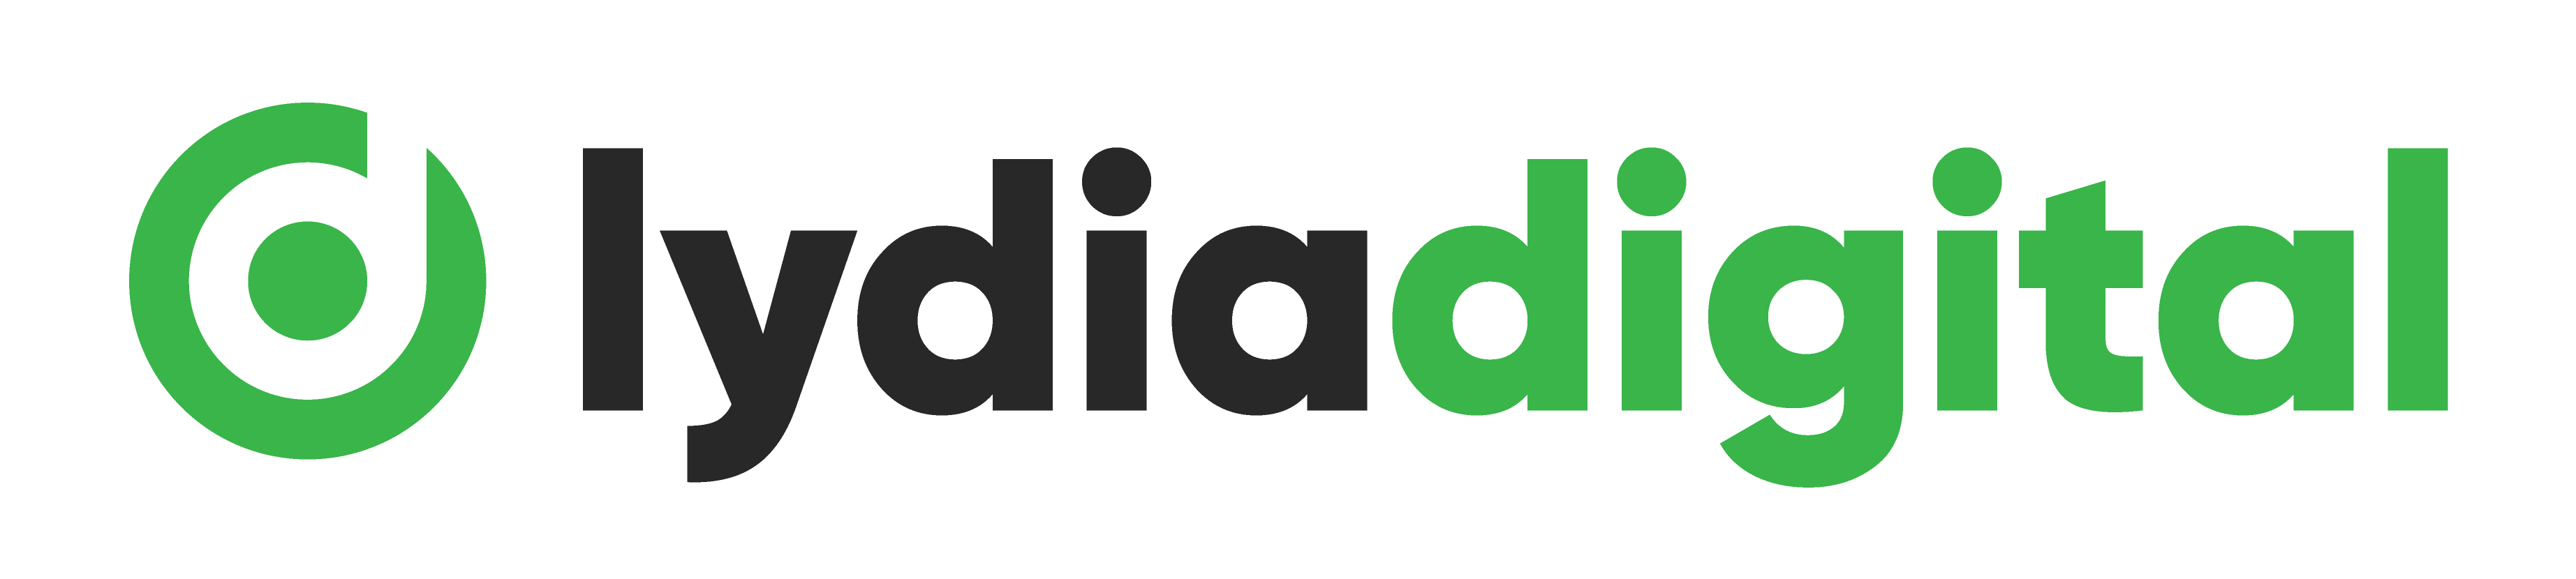 Lydia Digital logo